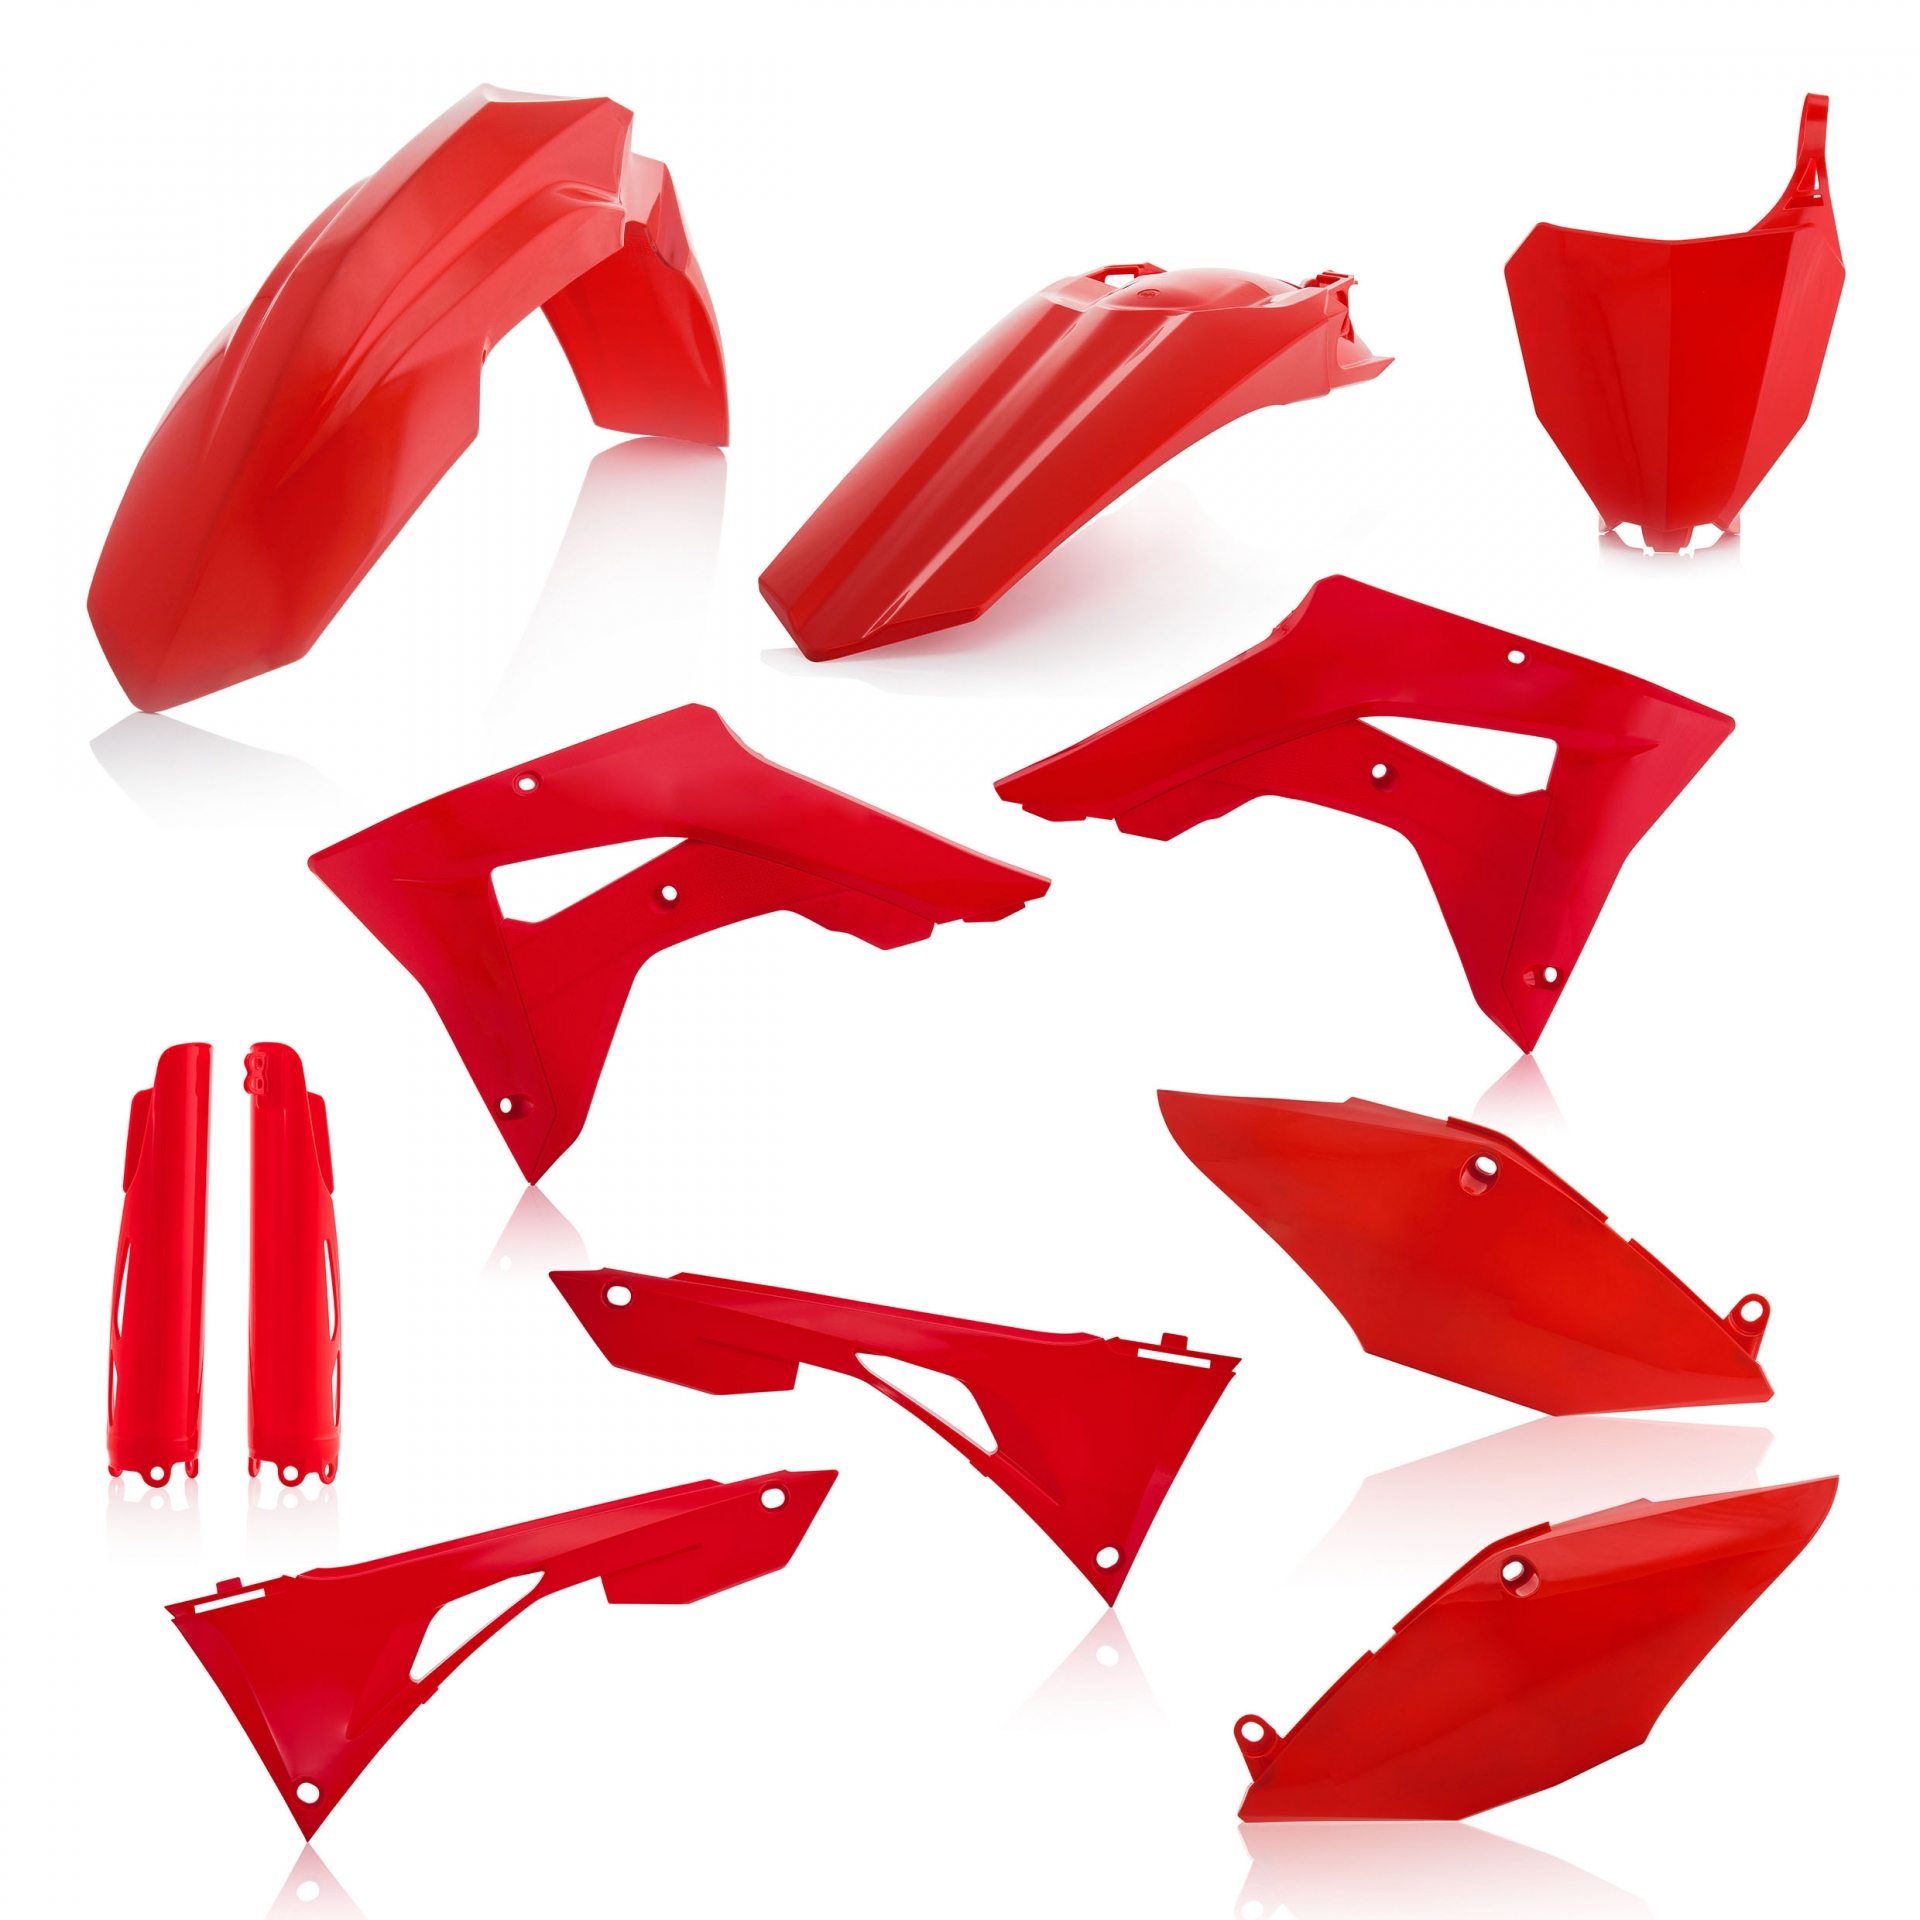 Plastikteile für deine Honda CRF / CR 250/450 in rot bestehend aus Kotflügel vorn Kotflügel hinten Kühlerspoiler Seitenteile Gabelschützer Startnummerntafel